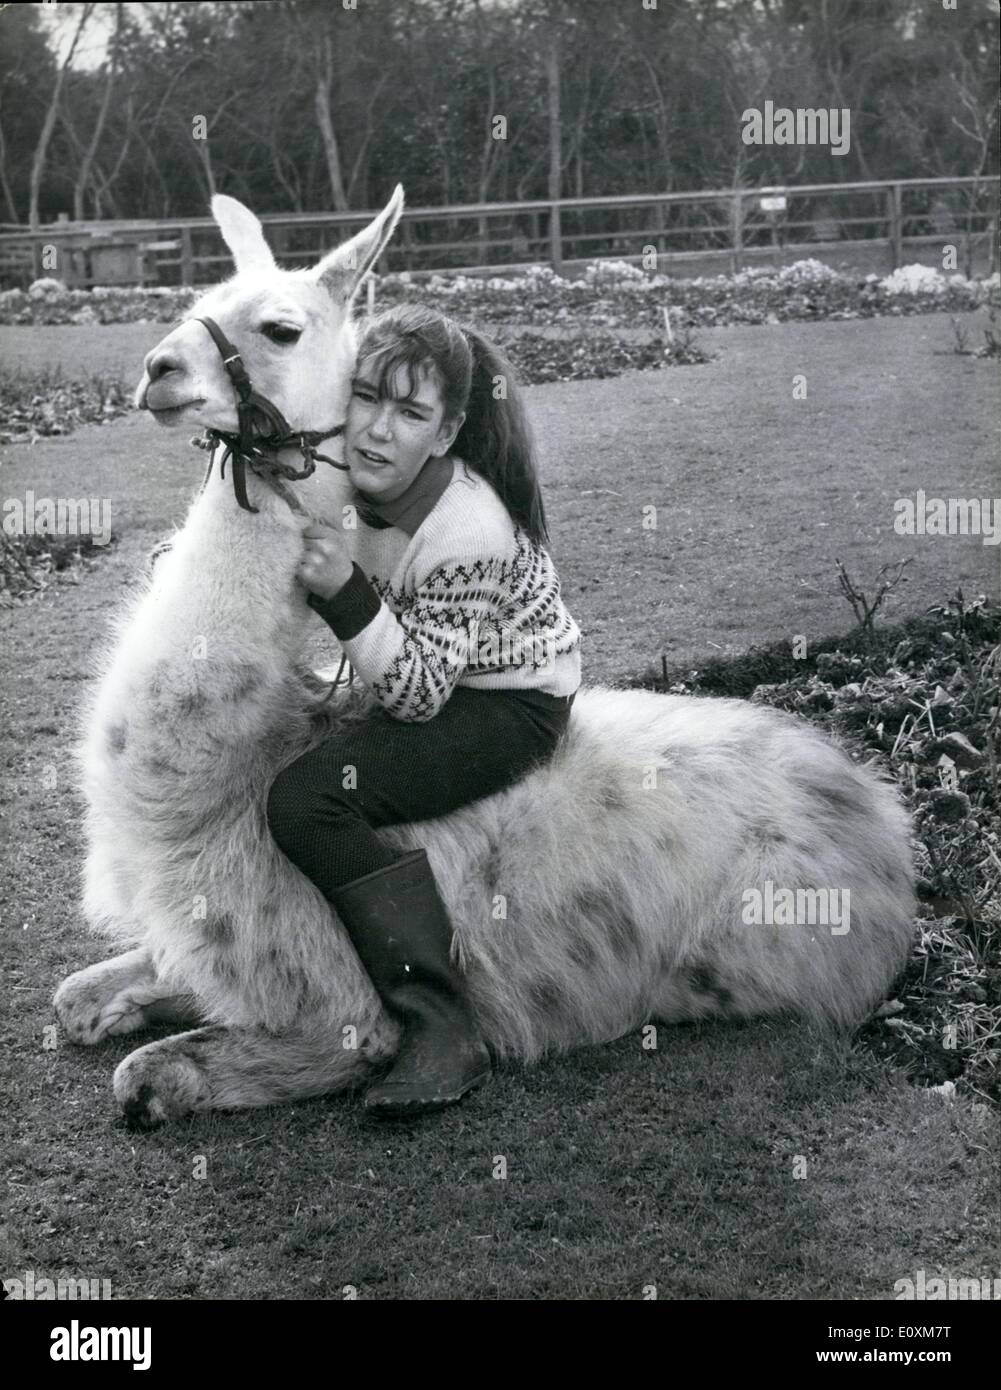 Avril 04, 1967 - Julie prend un tour - sur un lama. : 13 ans Julie Cook se soulever quelques sourcils horsey est il était de s'aventurer près de la course turf sur ce chargeur blanc, et elle a déjà fait quelque chose d'un scandale dans le composé de Lama au Flamingo Park Zoo, le Yorkshire. Le fait est que les lamas juste ne pas transporter de passagers - c'est du jamais vu - et les autres lamas étaient très indigné de il quand Julie rode son animal llama, la liberté, le long de leur enclos l'autre jour Banque D'Images